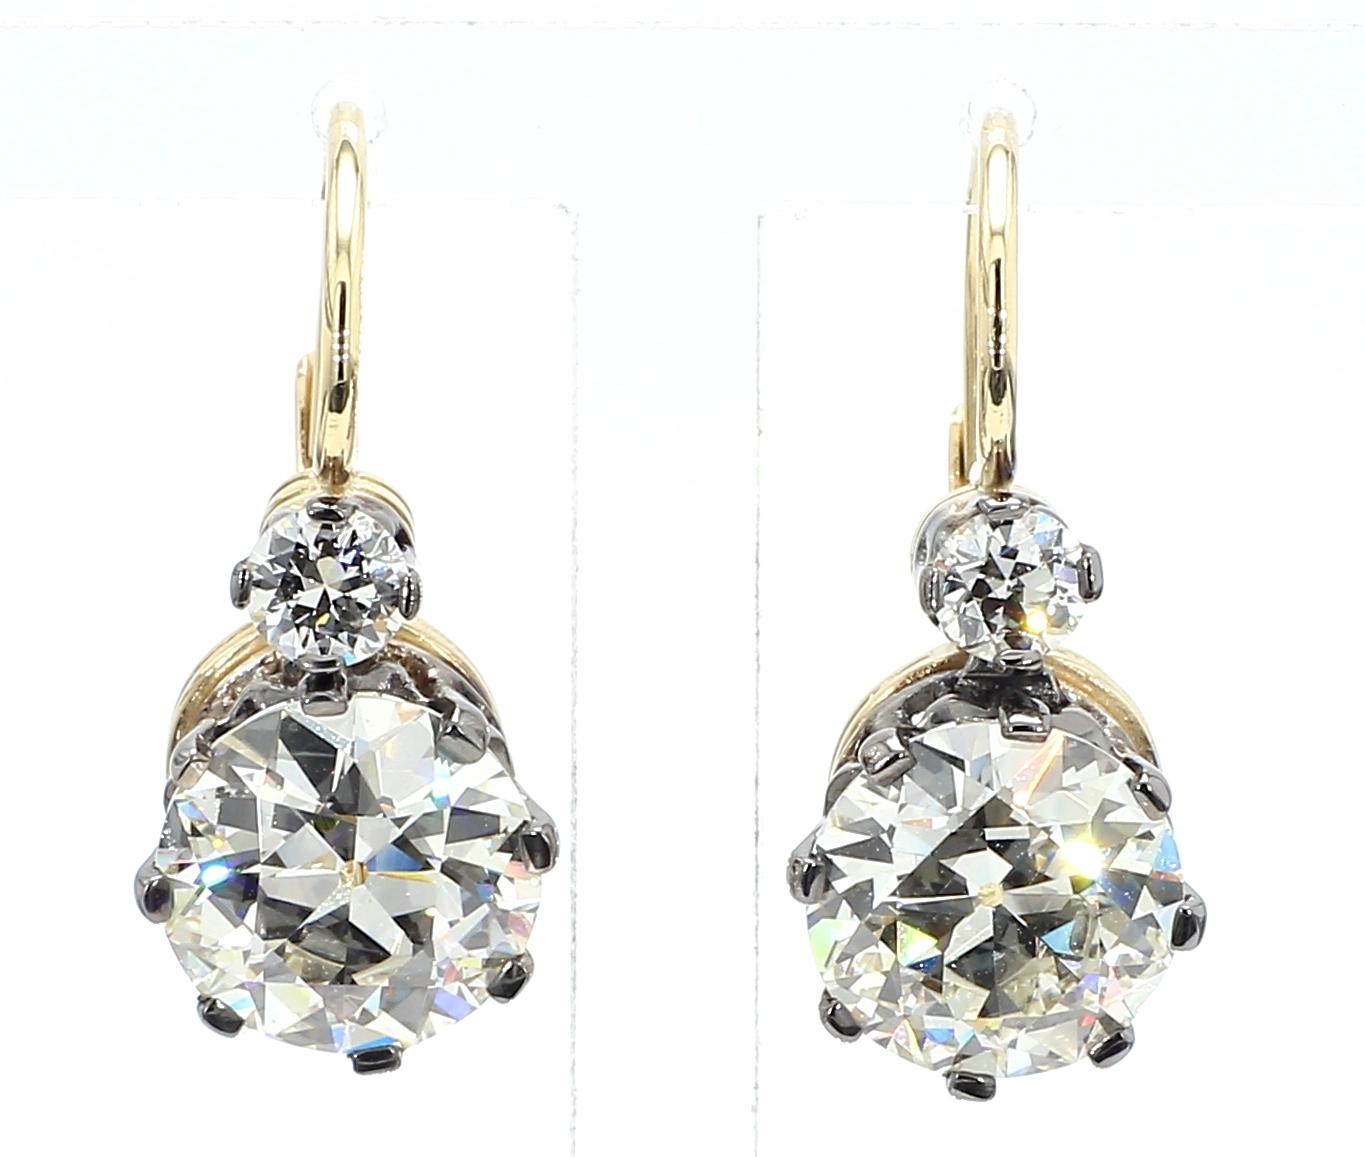 Der 6,02-Karat-Diamant-Ohrring Antique ist ein wirklich bemerkenswertes Schmuckstück, das Eleganz und Raffinesse ausstrahlt. Dieser mit viel Liebe zum Detail gefertigte Ohrring präsentiert einen atemberaubenden Diamanten im Rundschliff von 6,02